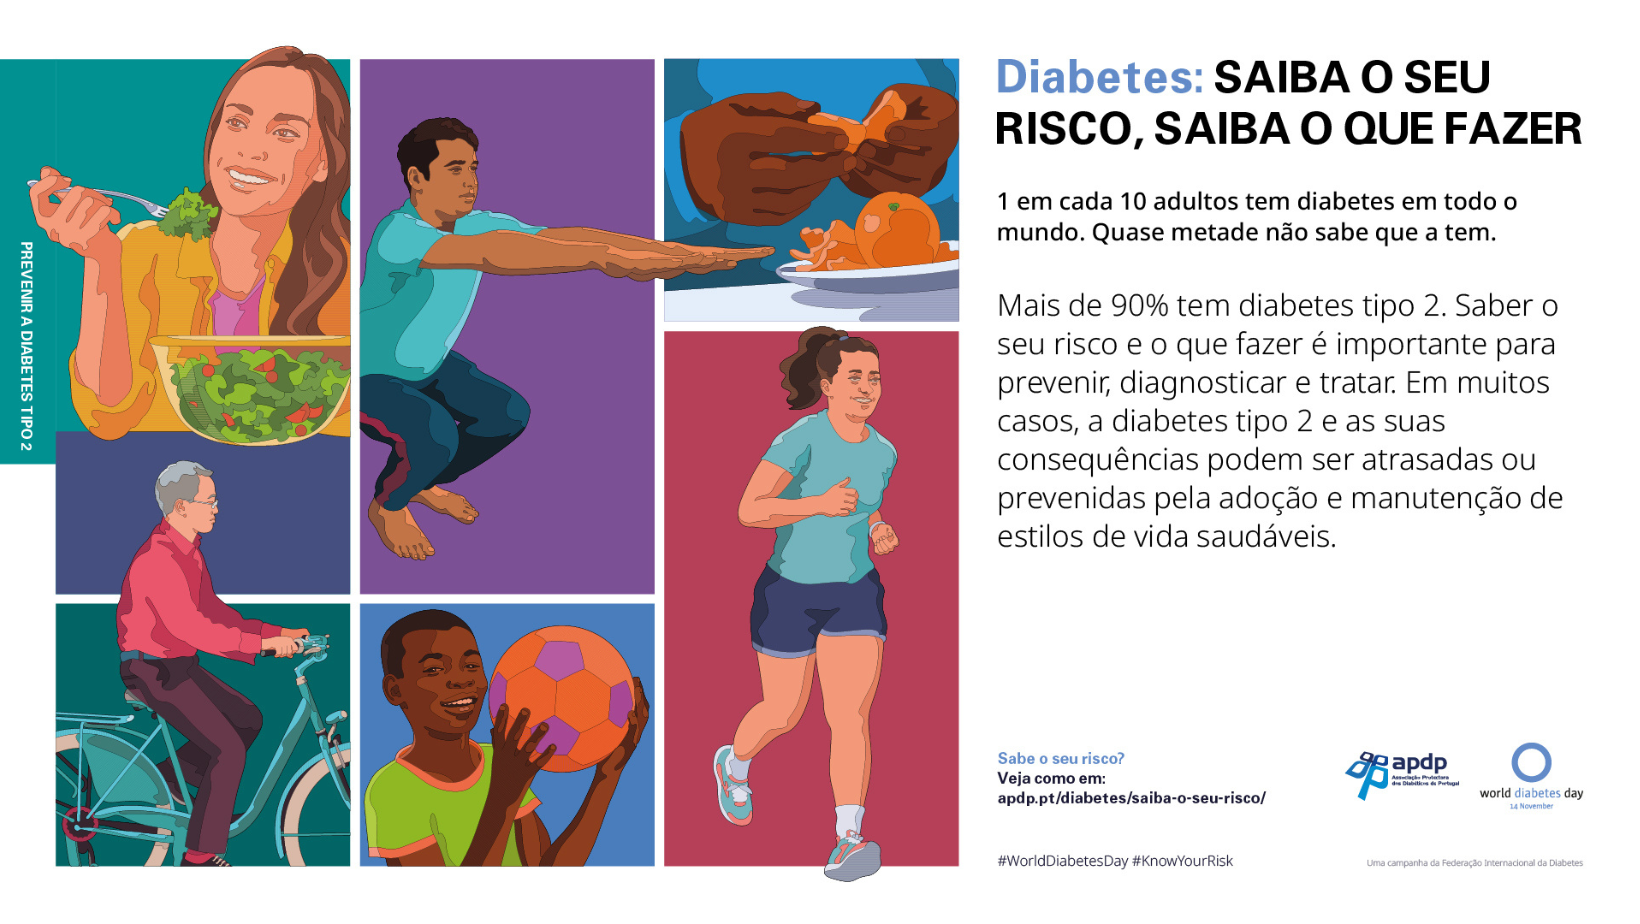 Oeiras celebrates World Diabetes Day